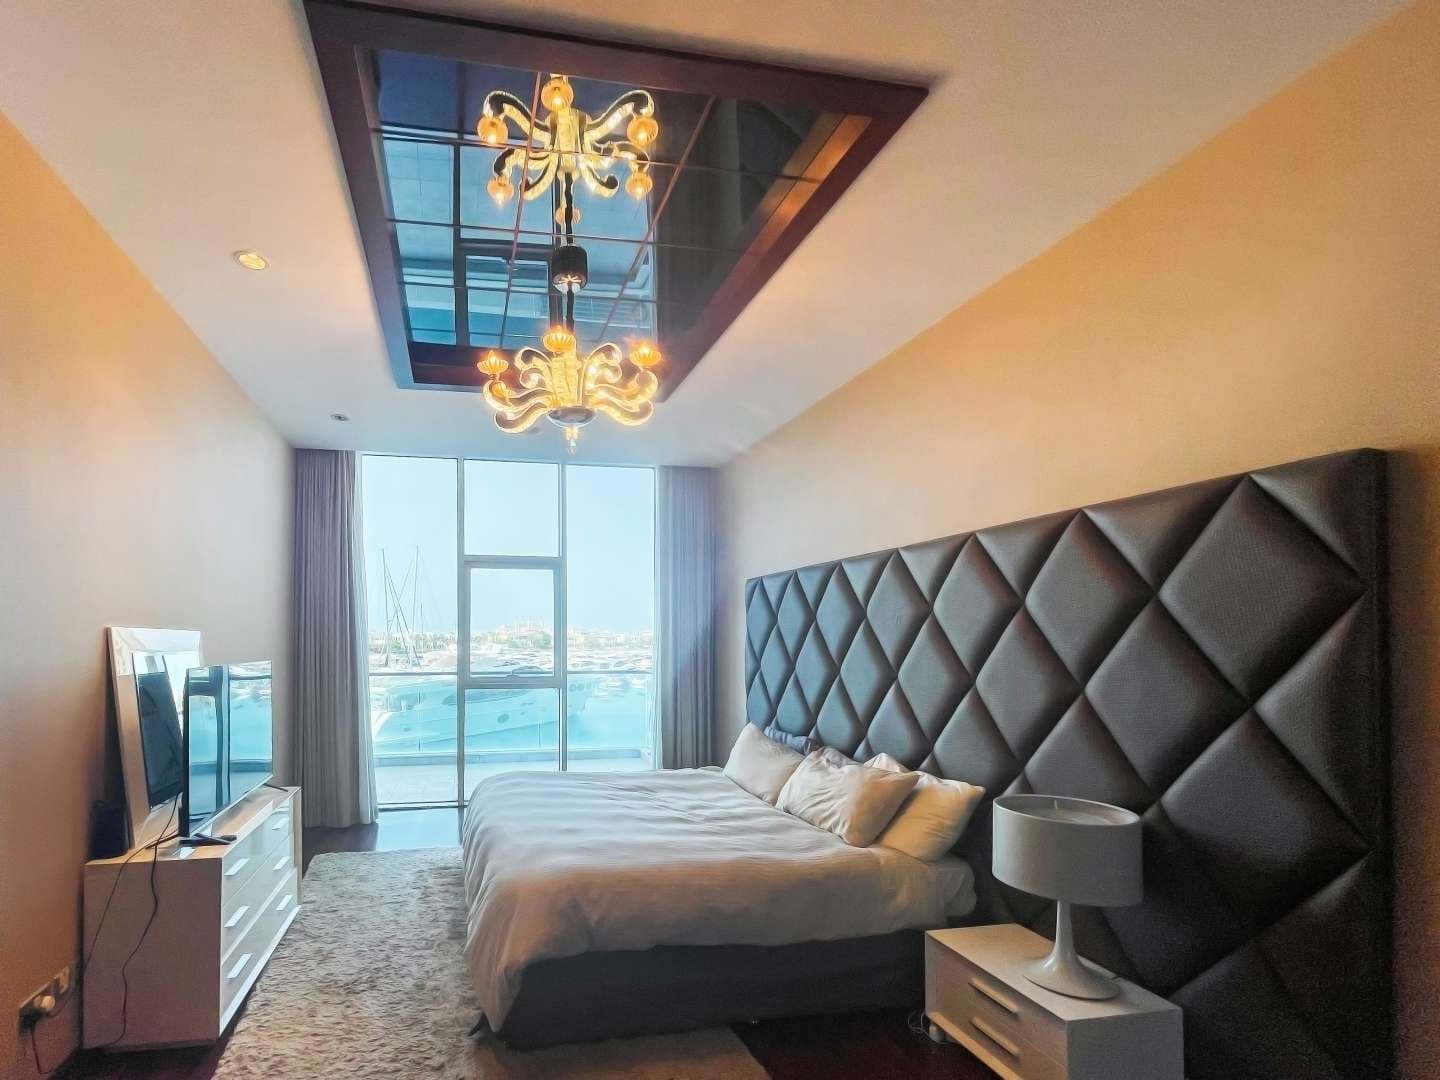 2 Bedroom Apartment For Rent Oceana Pacific Lp10721 38460d9e8ddf420.jpg